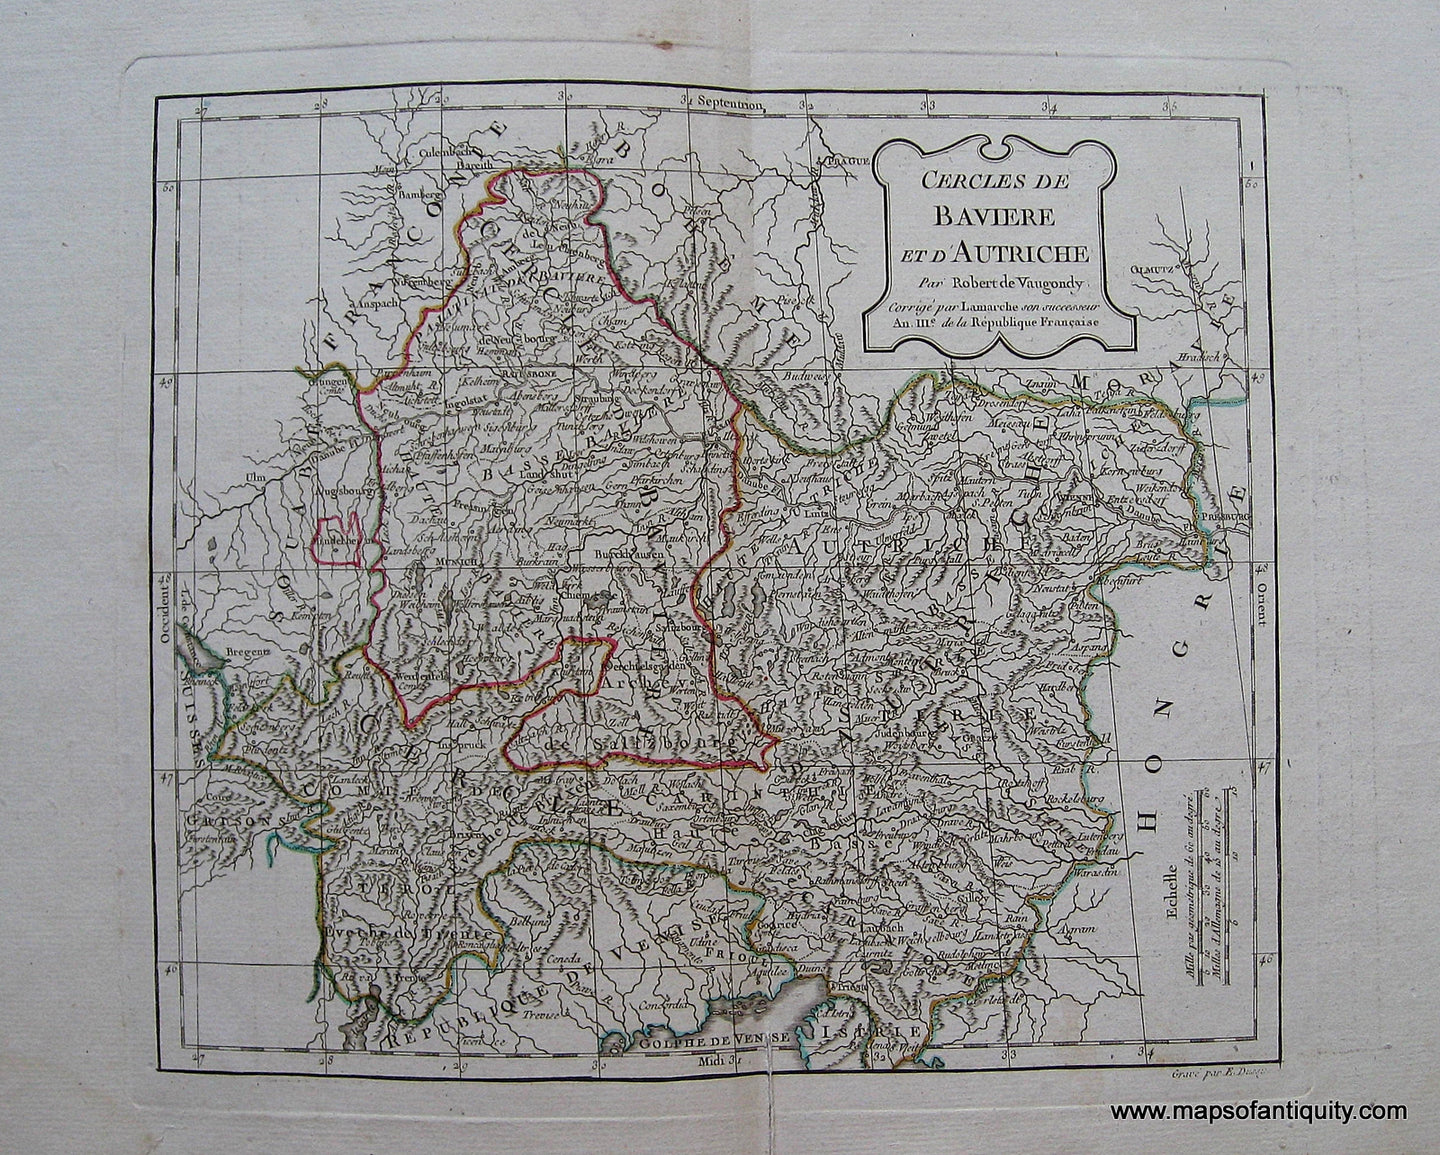 Engraved-Antique-Map-Cercles-de-Baviere-et-d'Autriche-Austria--1760-Robert-de-Vaugondy-Maps-Of-Antiquity